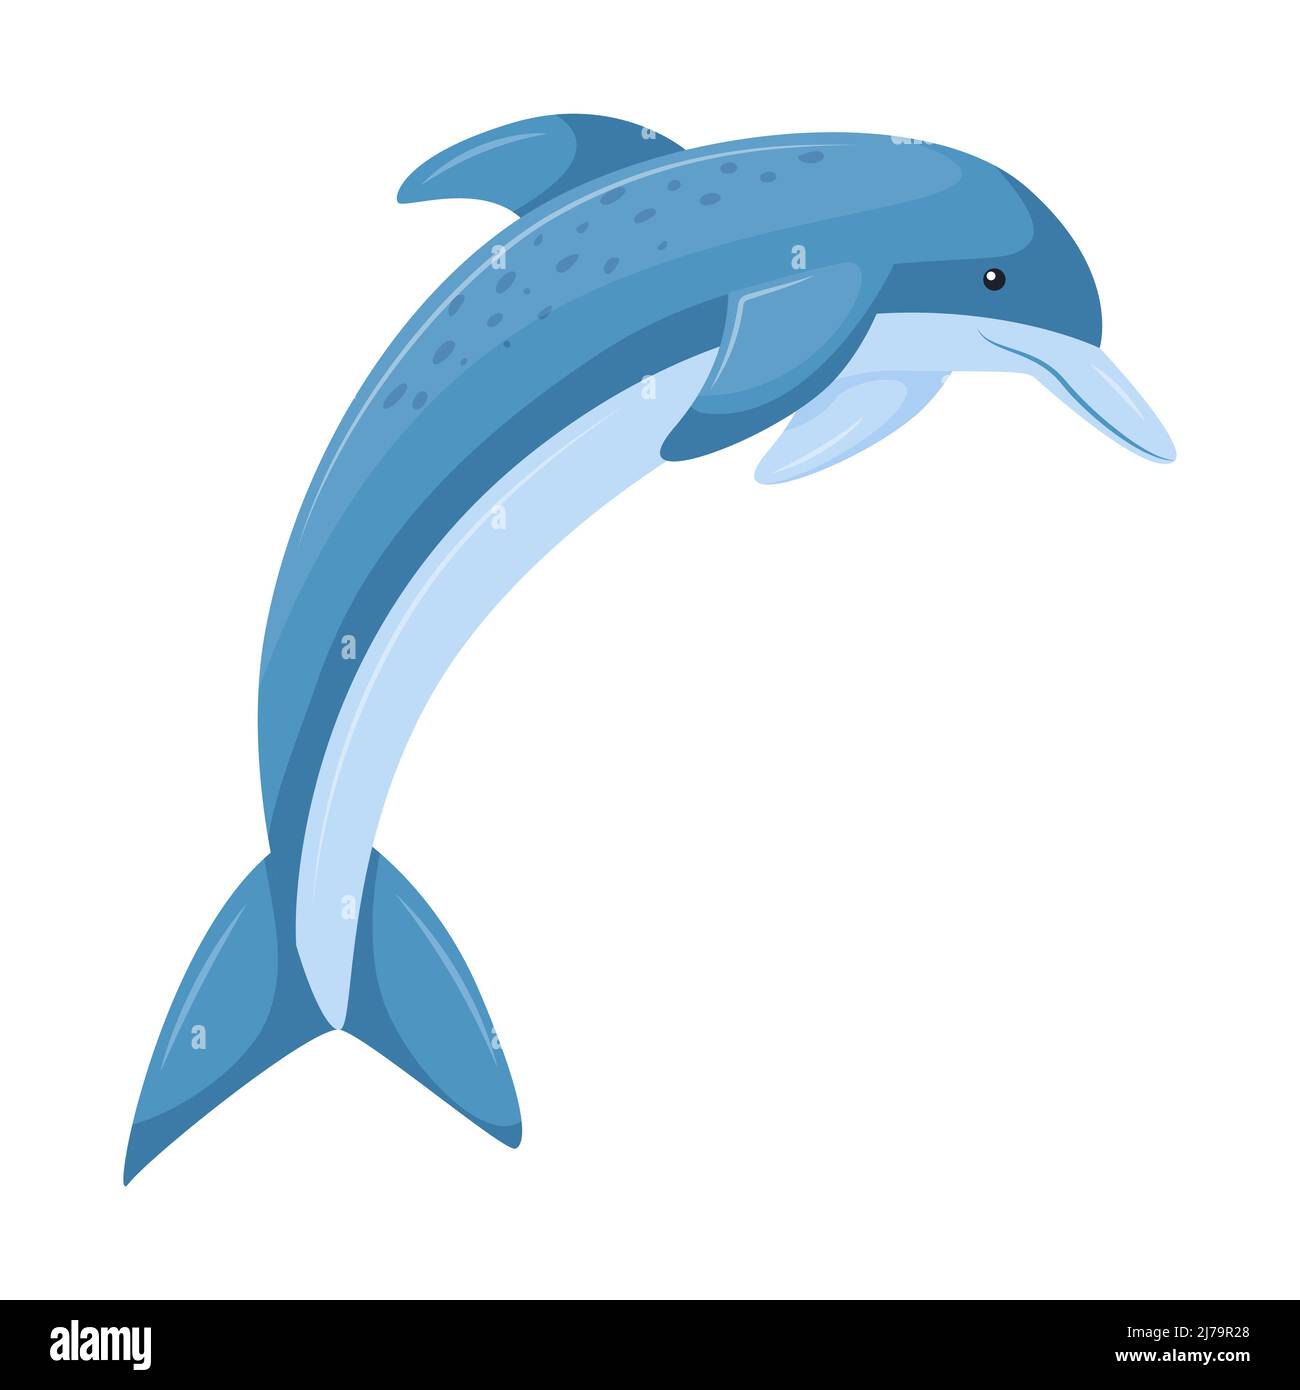 Un dauphin bleu sautant hors de l'eau. Adorable personnage, animal aquatique. Illustration vectorielle dans un style de dessin animé plat isolé sur un arrière-plan blanc Illustration de Vecteur